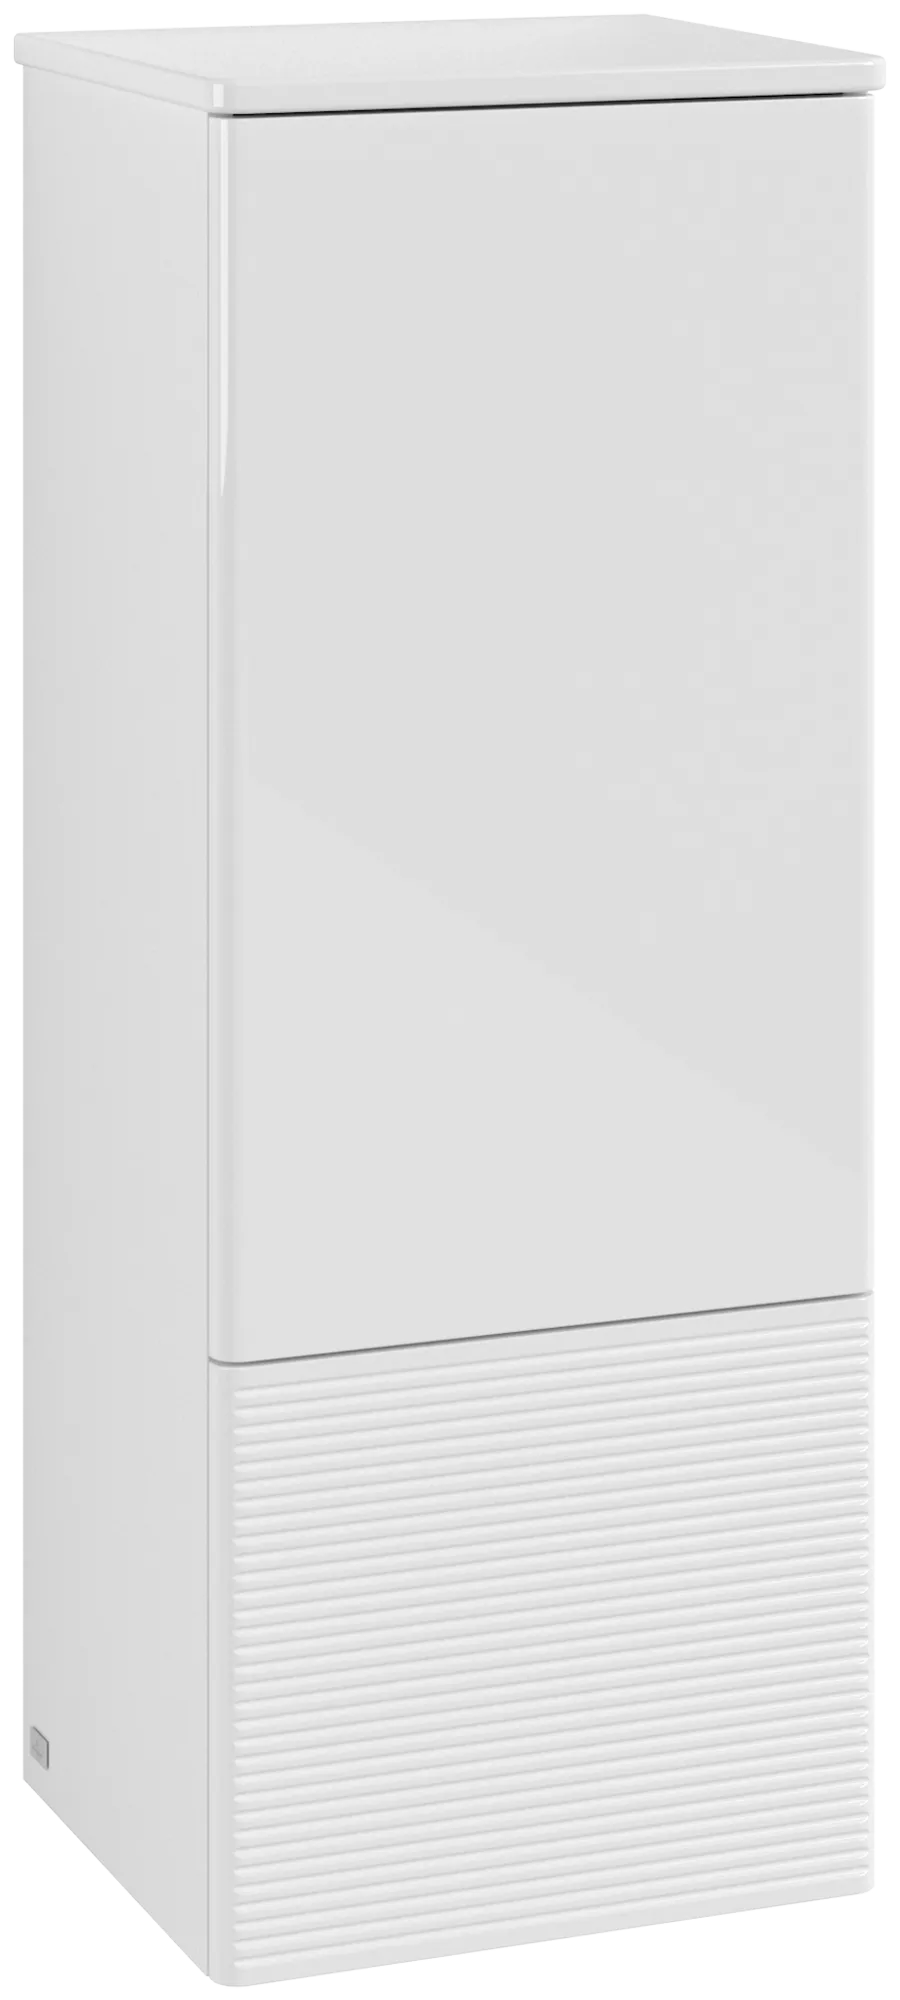 Bild von VILLEROY BOCH Antao Mittelschrank, mit Beleuchtung, 1 Tür, 414 x 1039 x 356 mm, Front mit Struktur, Glossy White Lacquer / Glossy White Lacquer #L44100GF